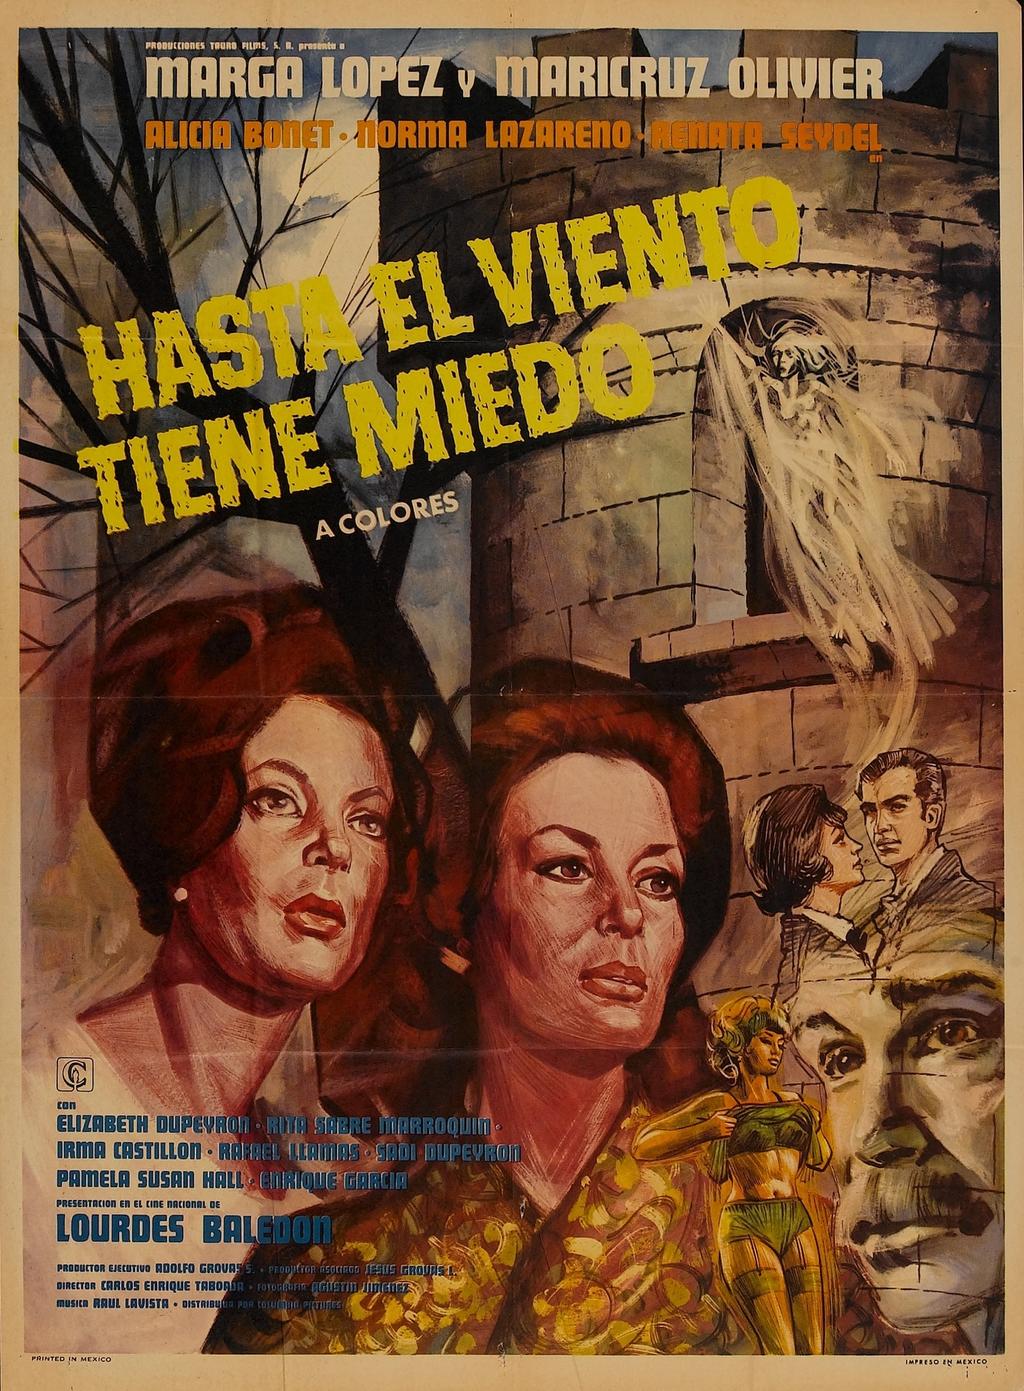 Número uno. Hasta el viento tiene miedo, versión de 1968, tiene una calificación de 7.5. Actuaron Marga López y Maricruz Olivier el filme dirigido por Carlos Enrique Taboada. (ESPECIAL) 